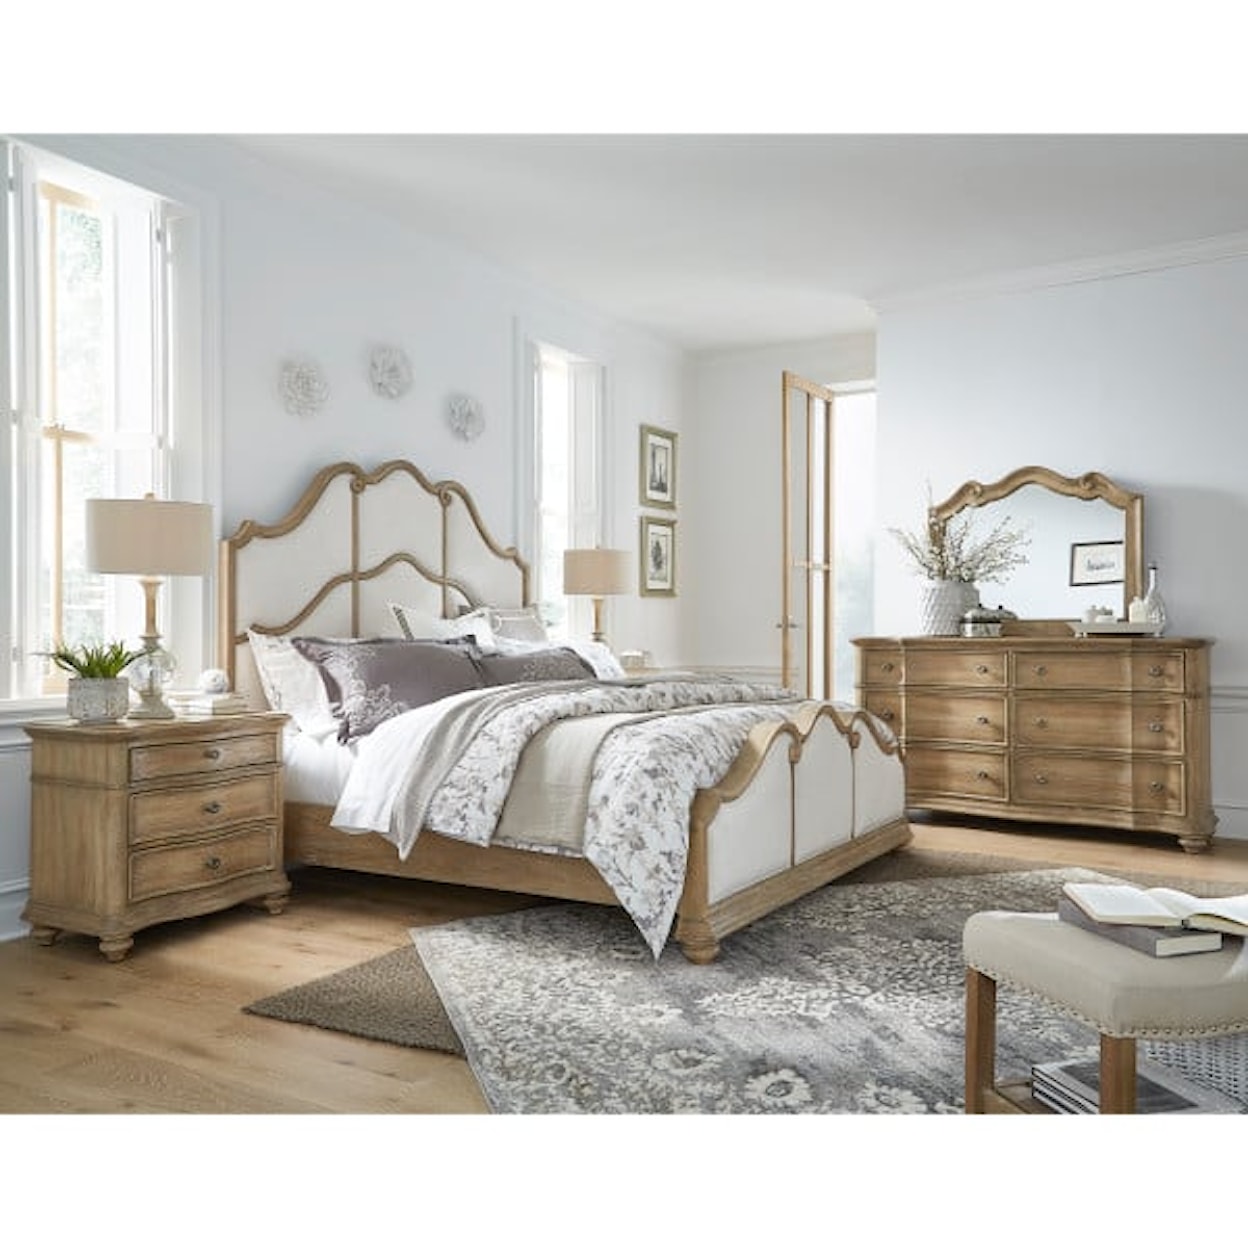 Pulaski Furniture Weston Hills Queen Bedroom Group